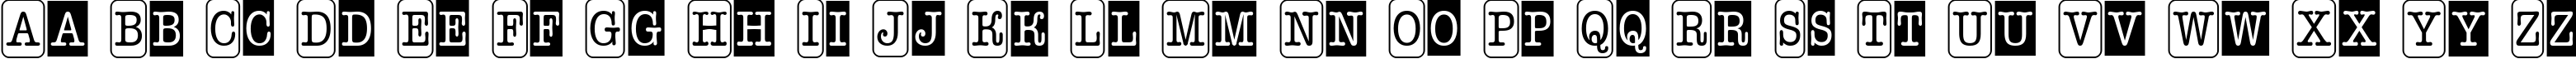 Пример написания английского алфавита шрифтом a_OldTyperNrCmCmb3